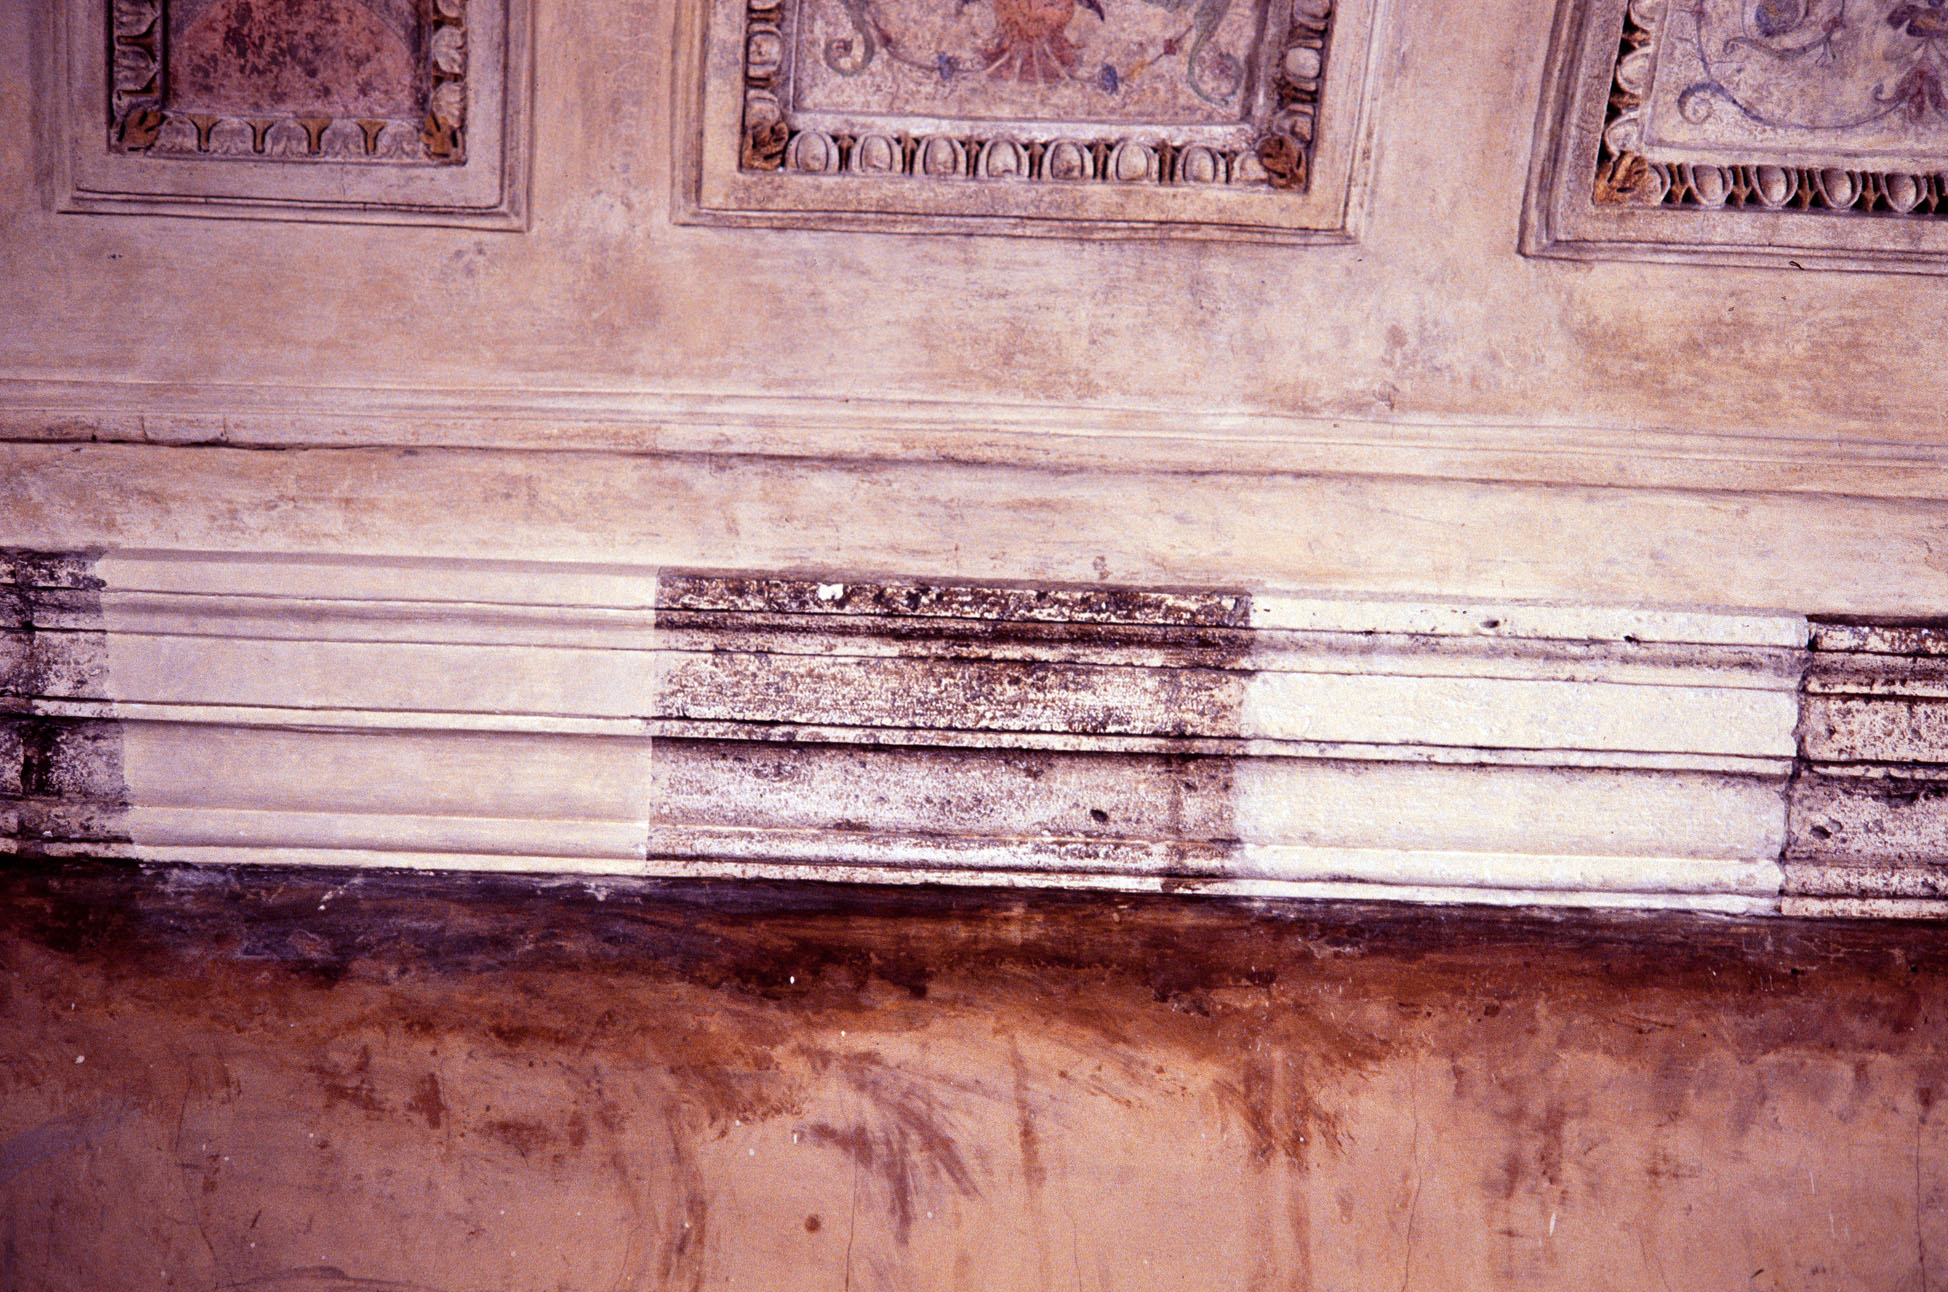 motivi decorativi a grottesche (decorazione plastico-pittorica, complesso decorativo) di Siciolante Girolamo (sec. XVI)